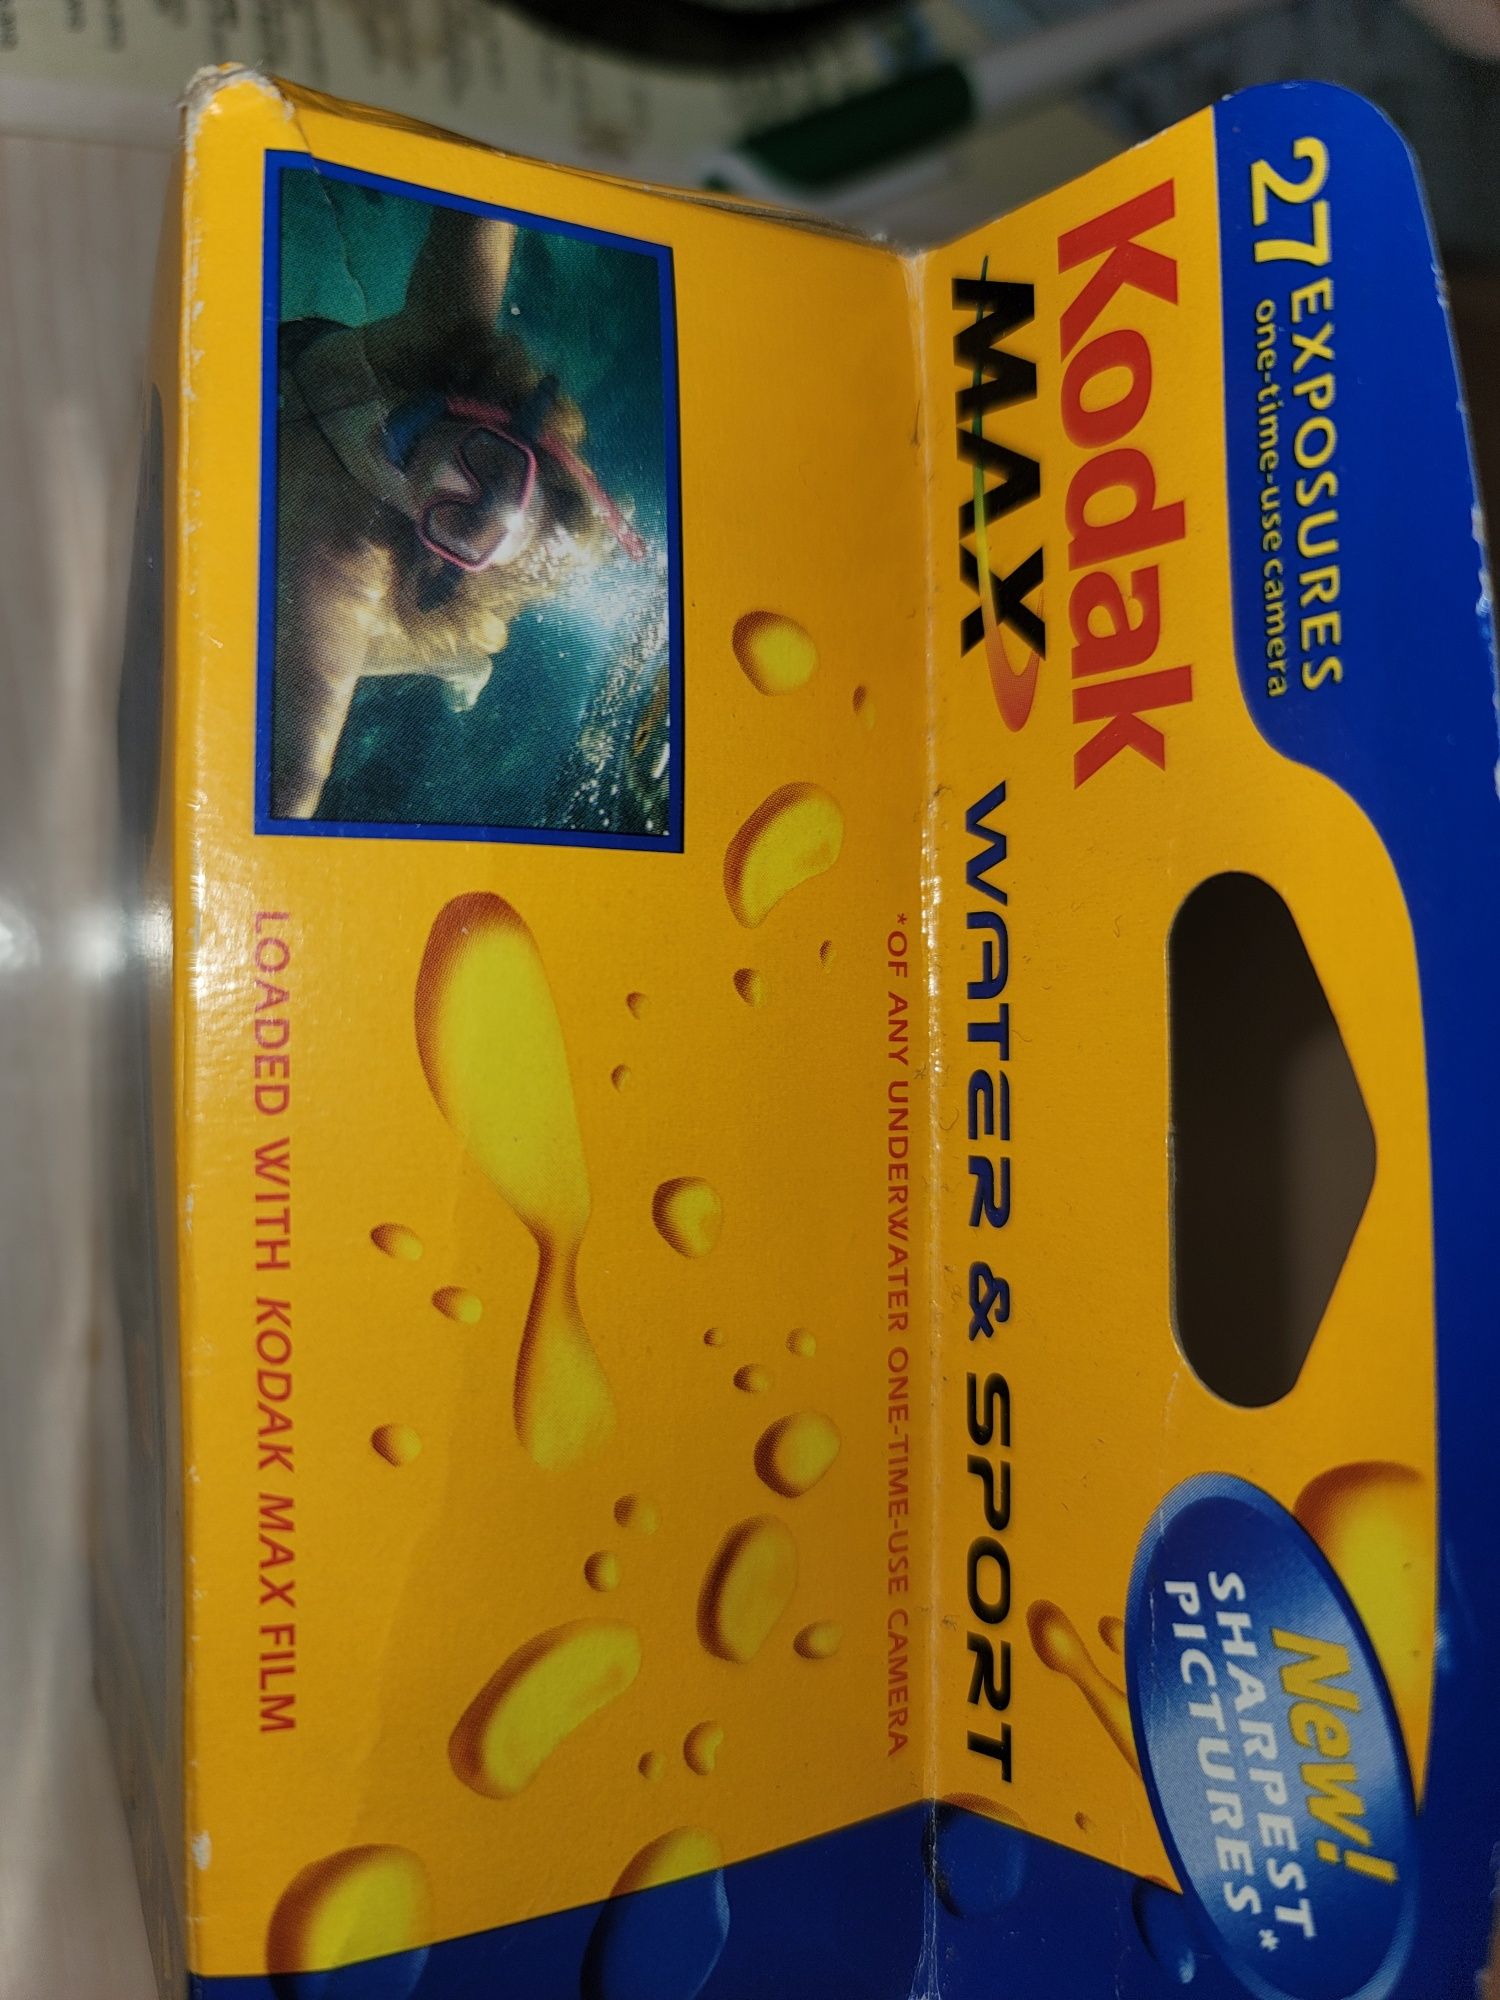 Kodak  Max новий плівковий. Знімає під водою.